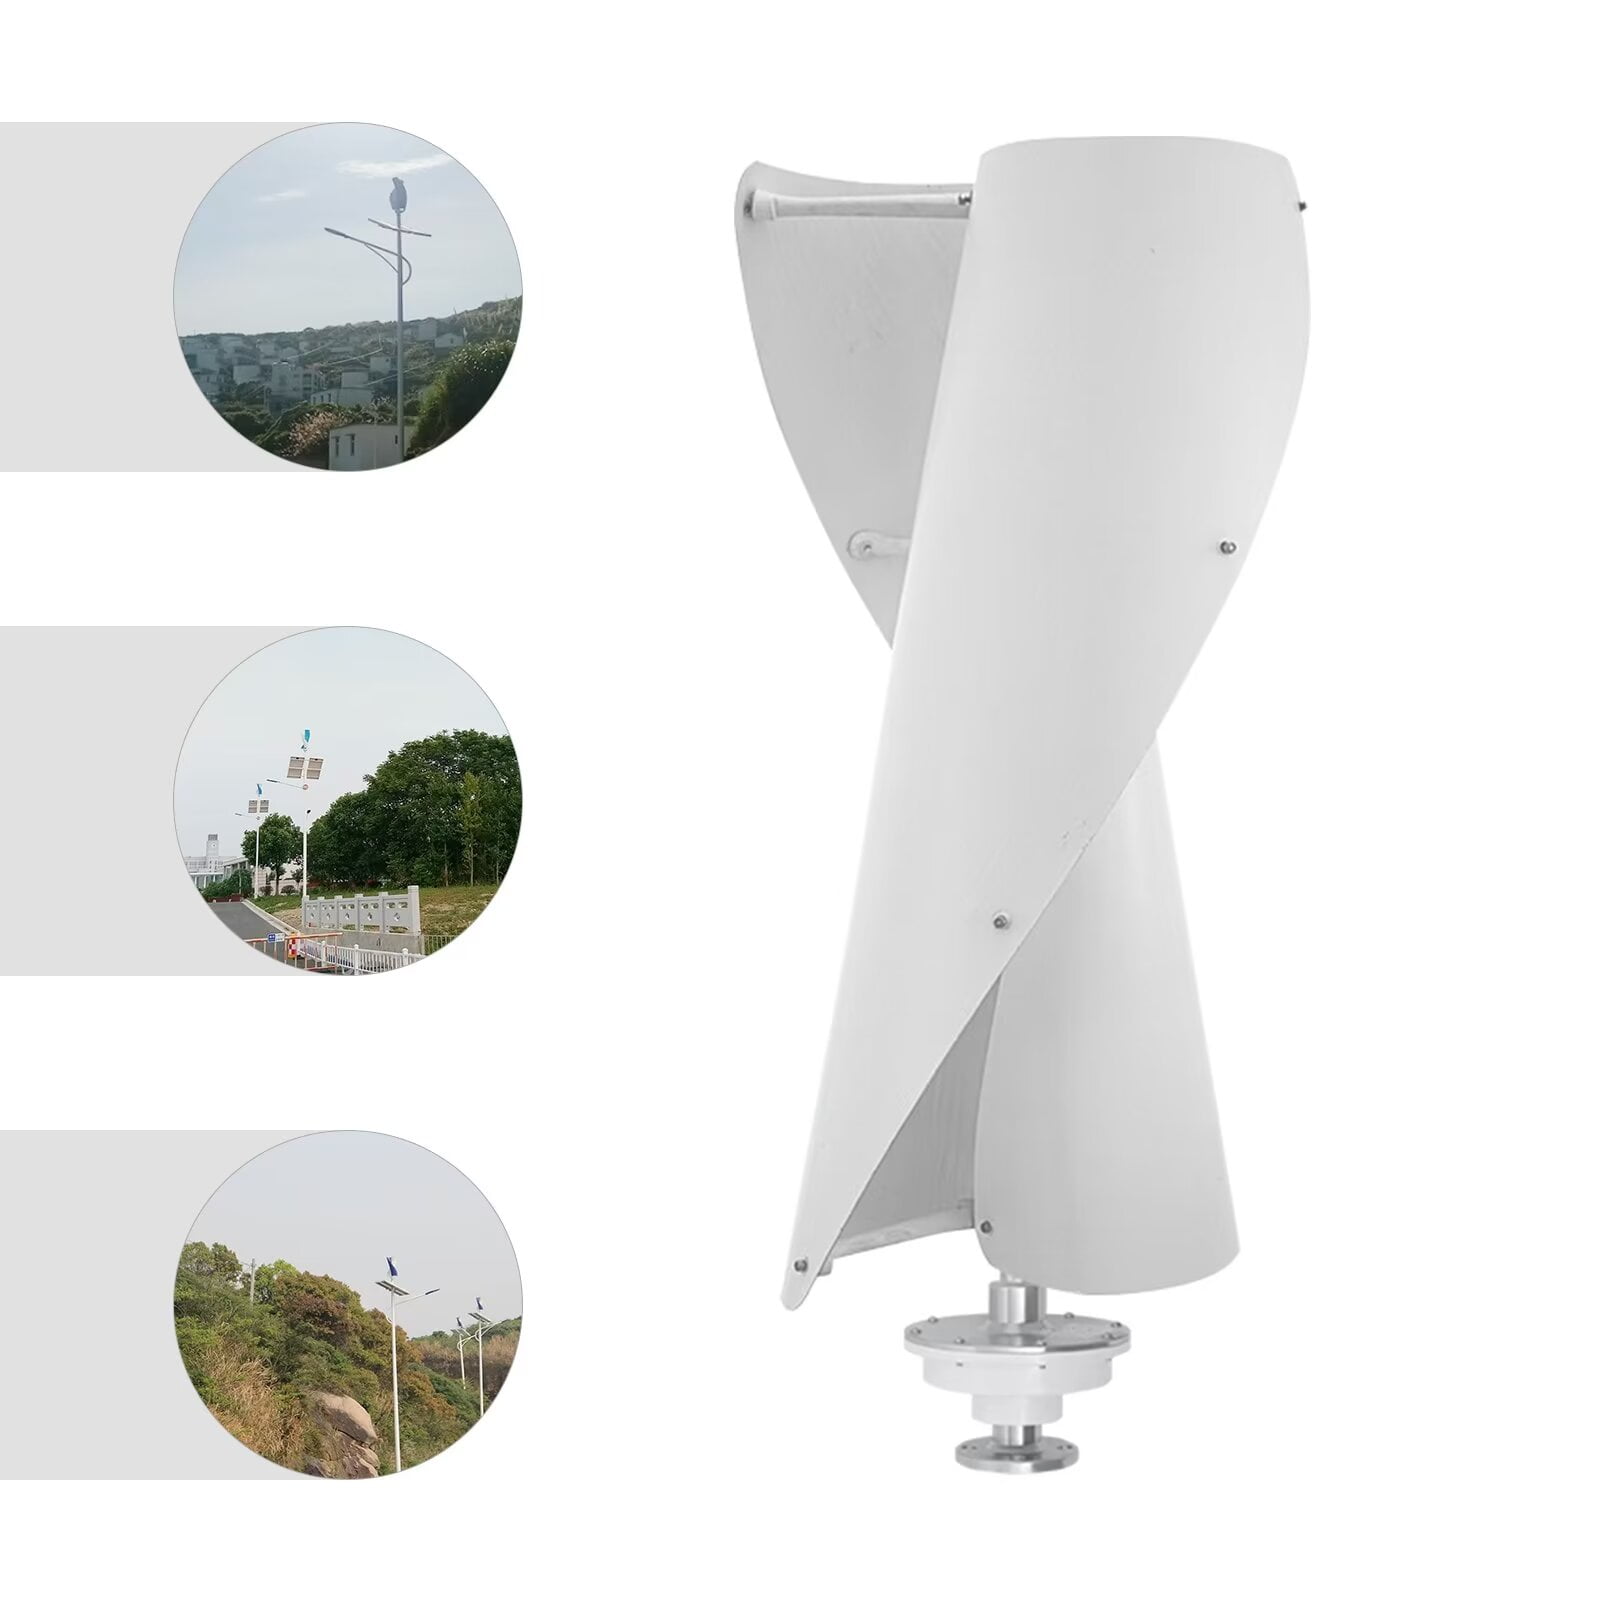 100W Vertical Axis Wind Turbine, 12V/24V